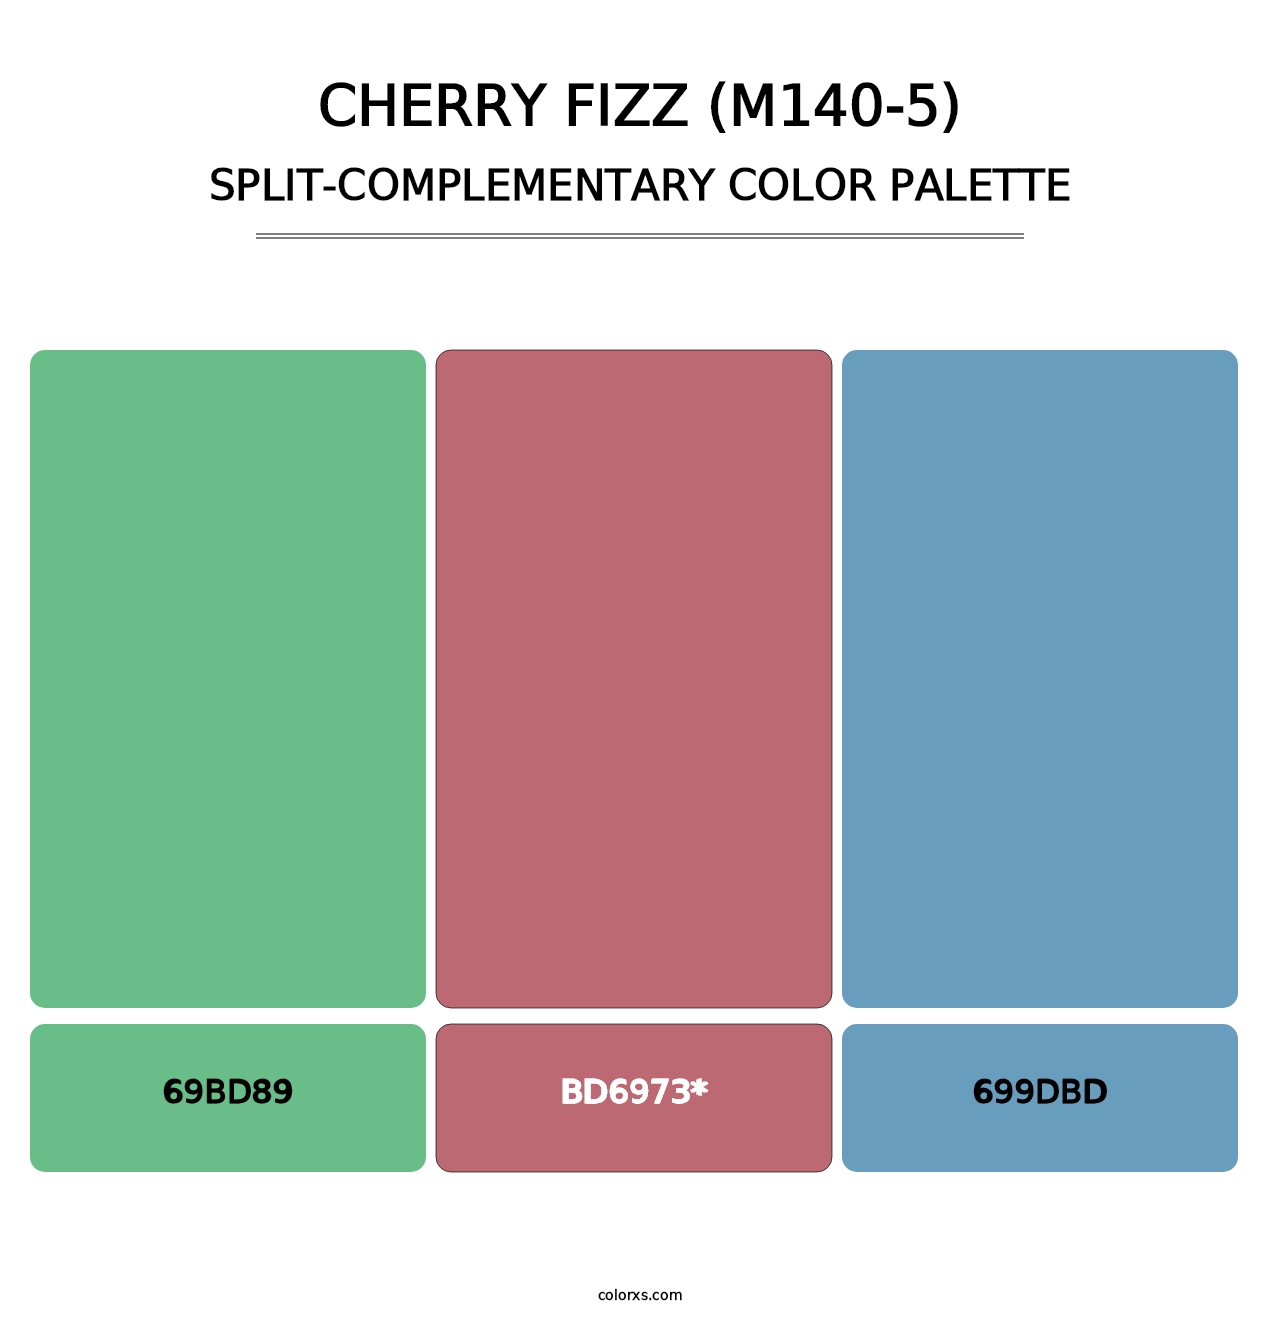 Cherry Fizz (M140-5) - Split-Complementary Color Palette